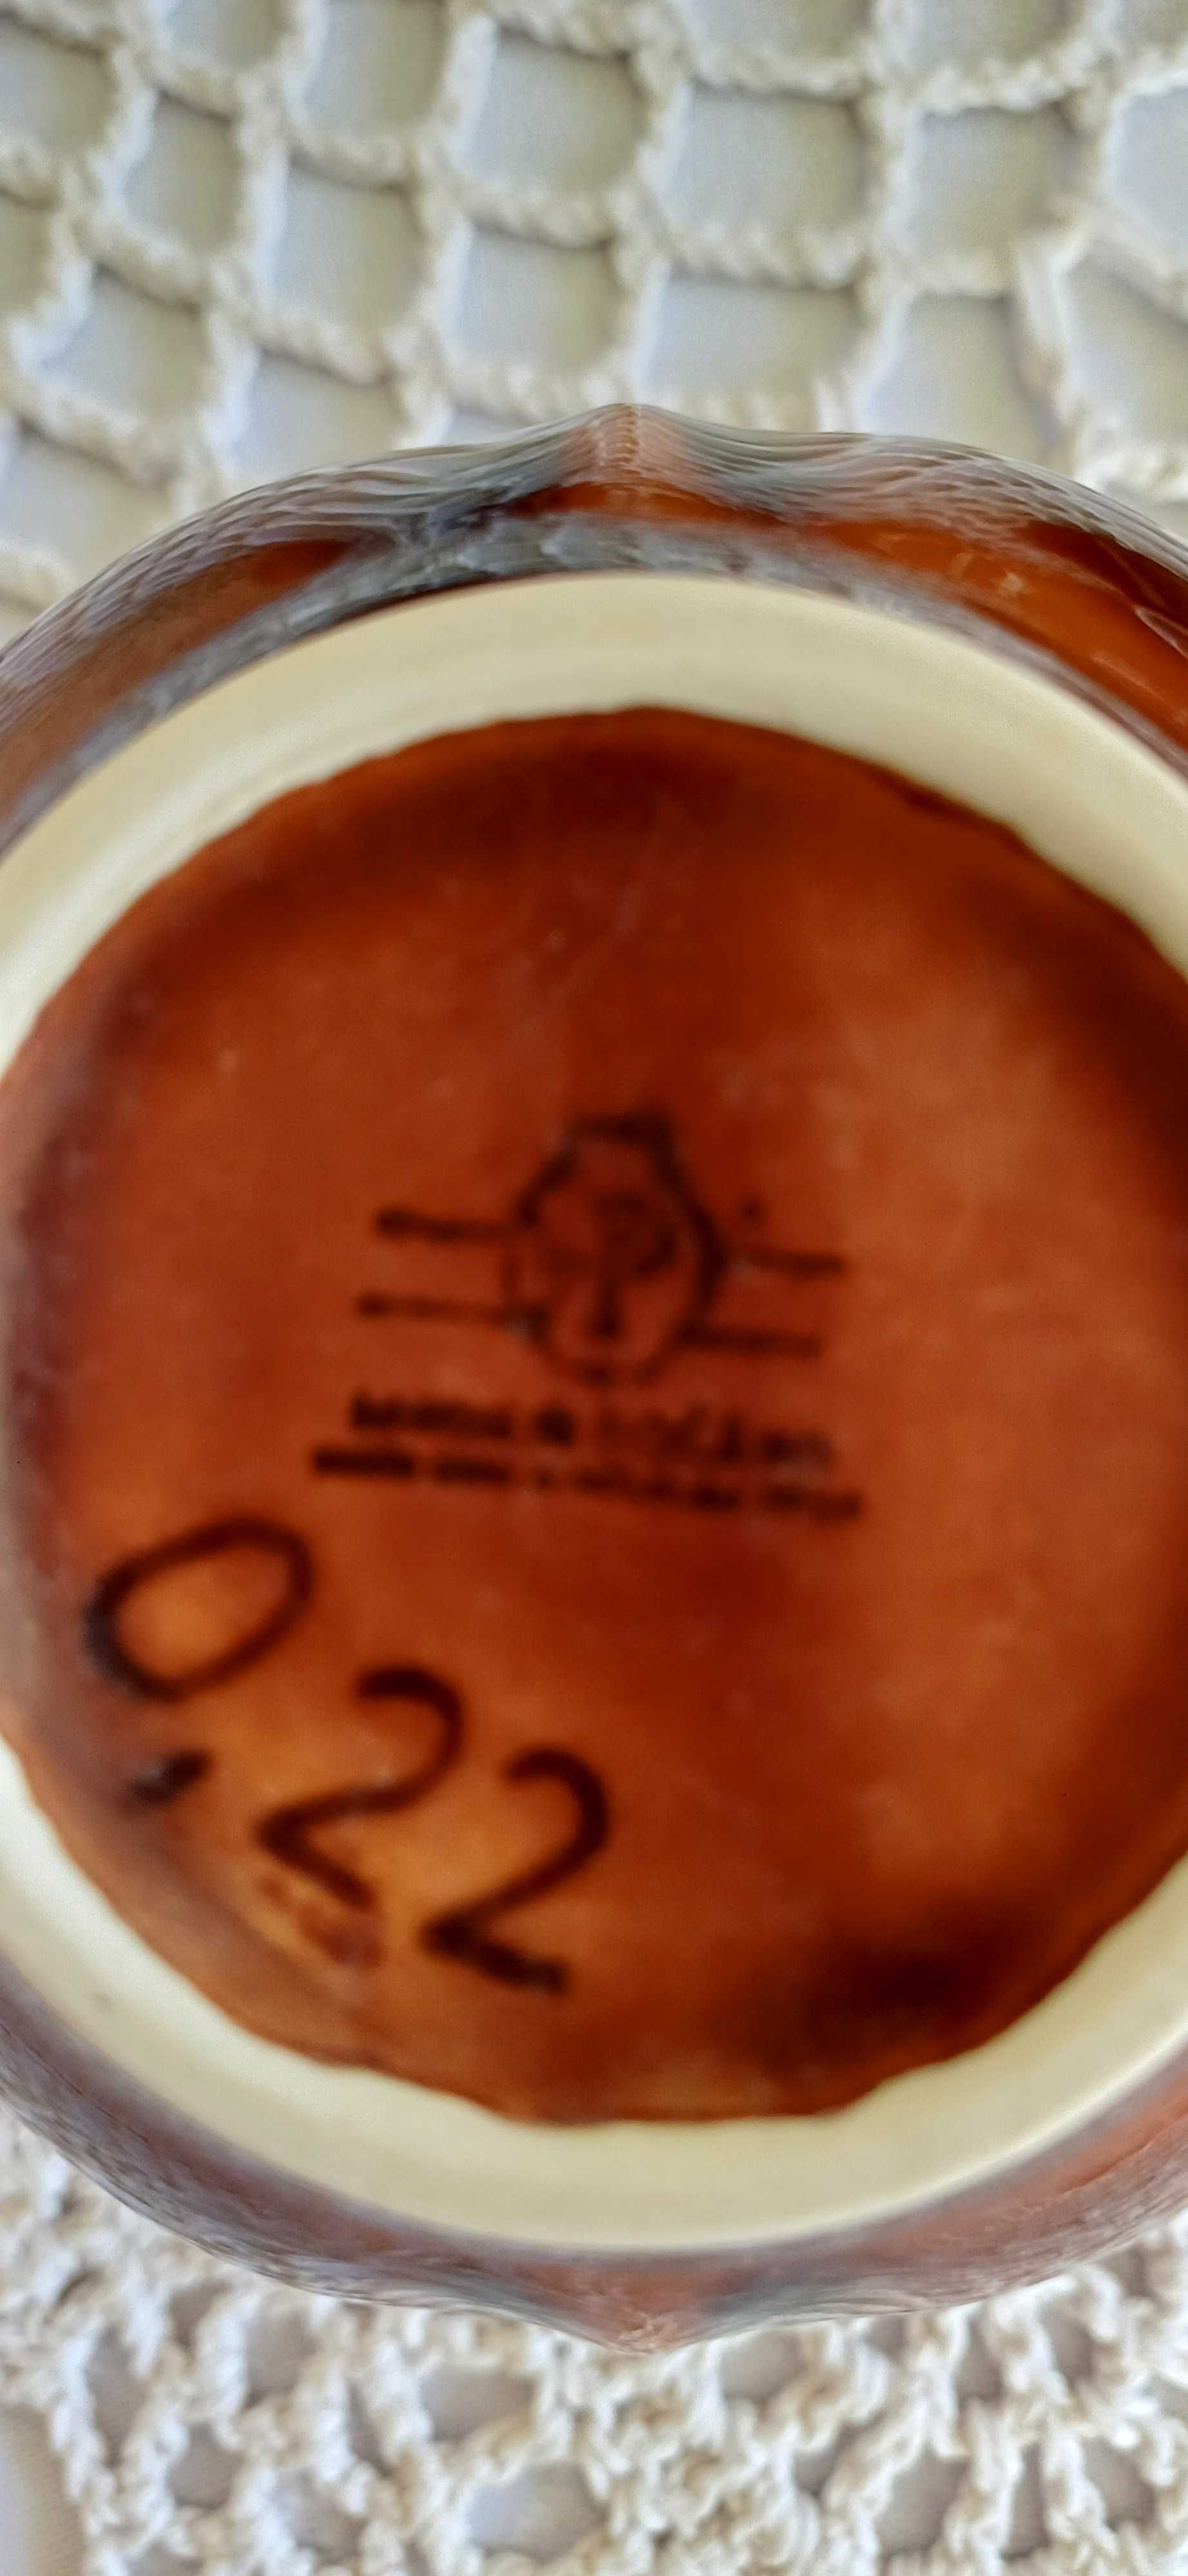 Oryginalny serwis do kawy porcelit, ciemny brąz, lata 70 XX wieku, PRL